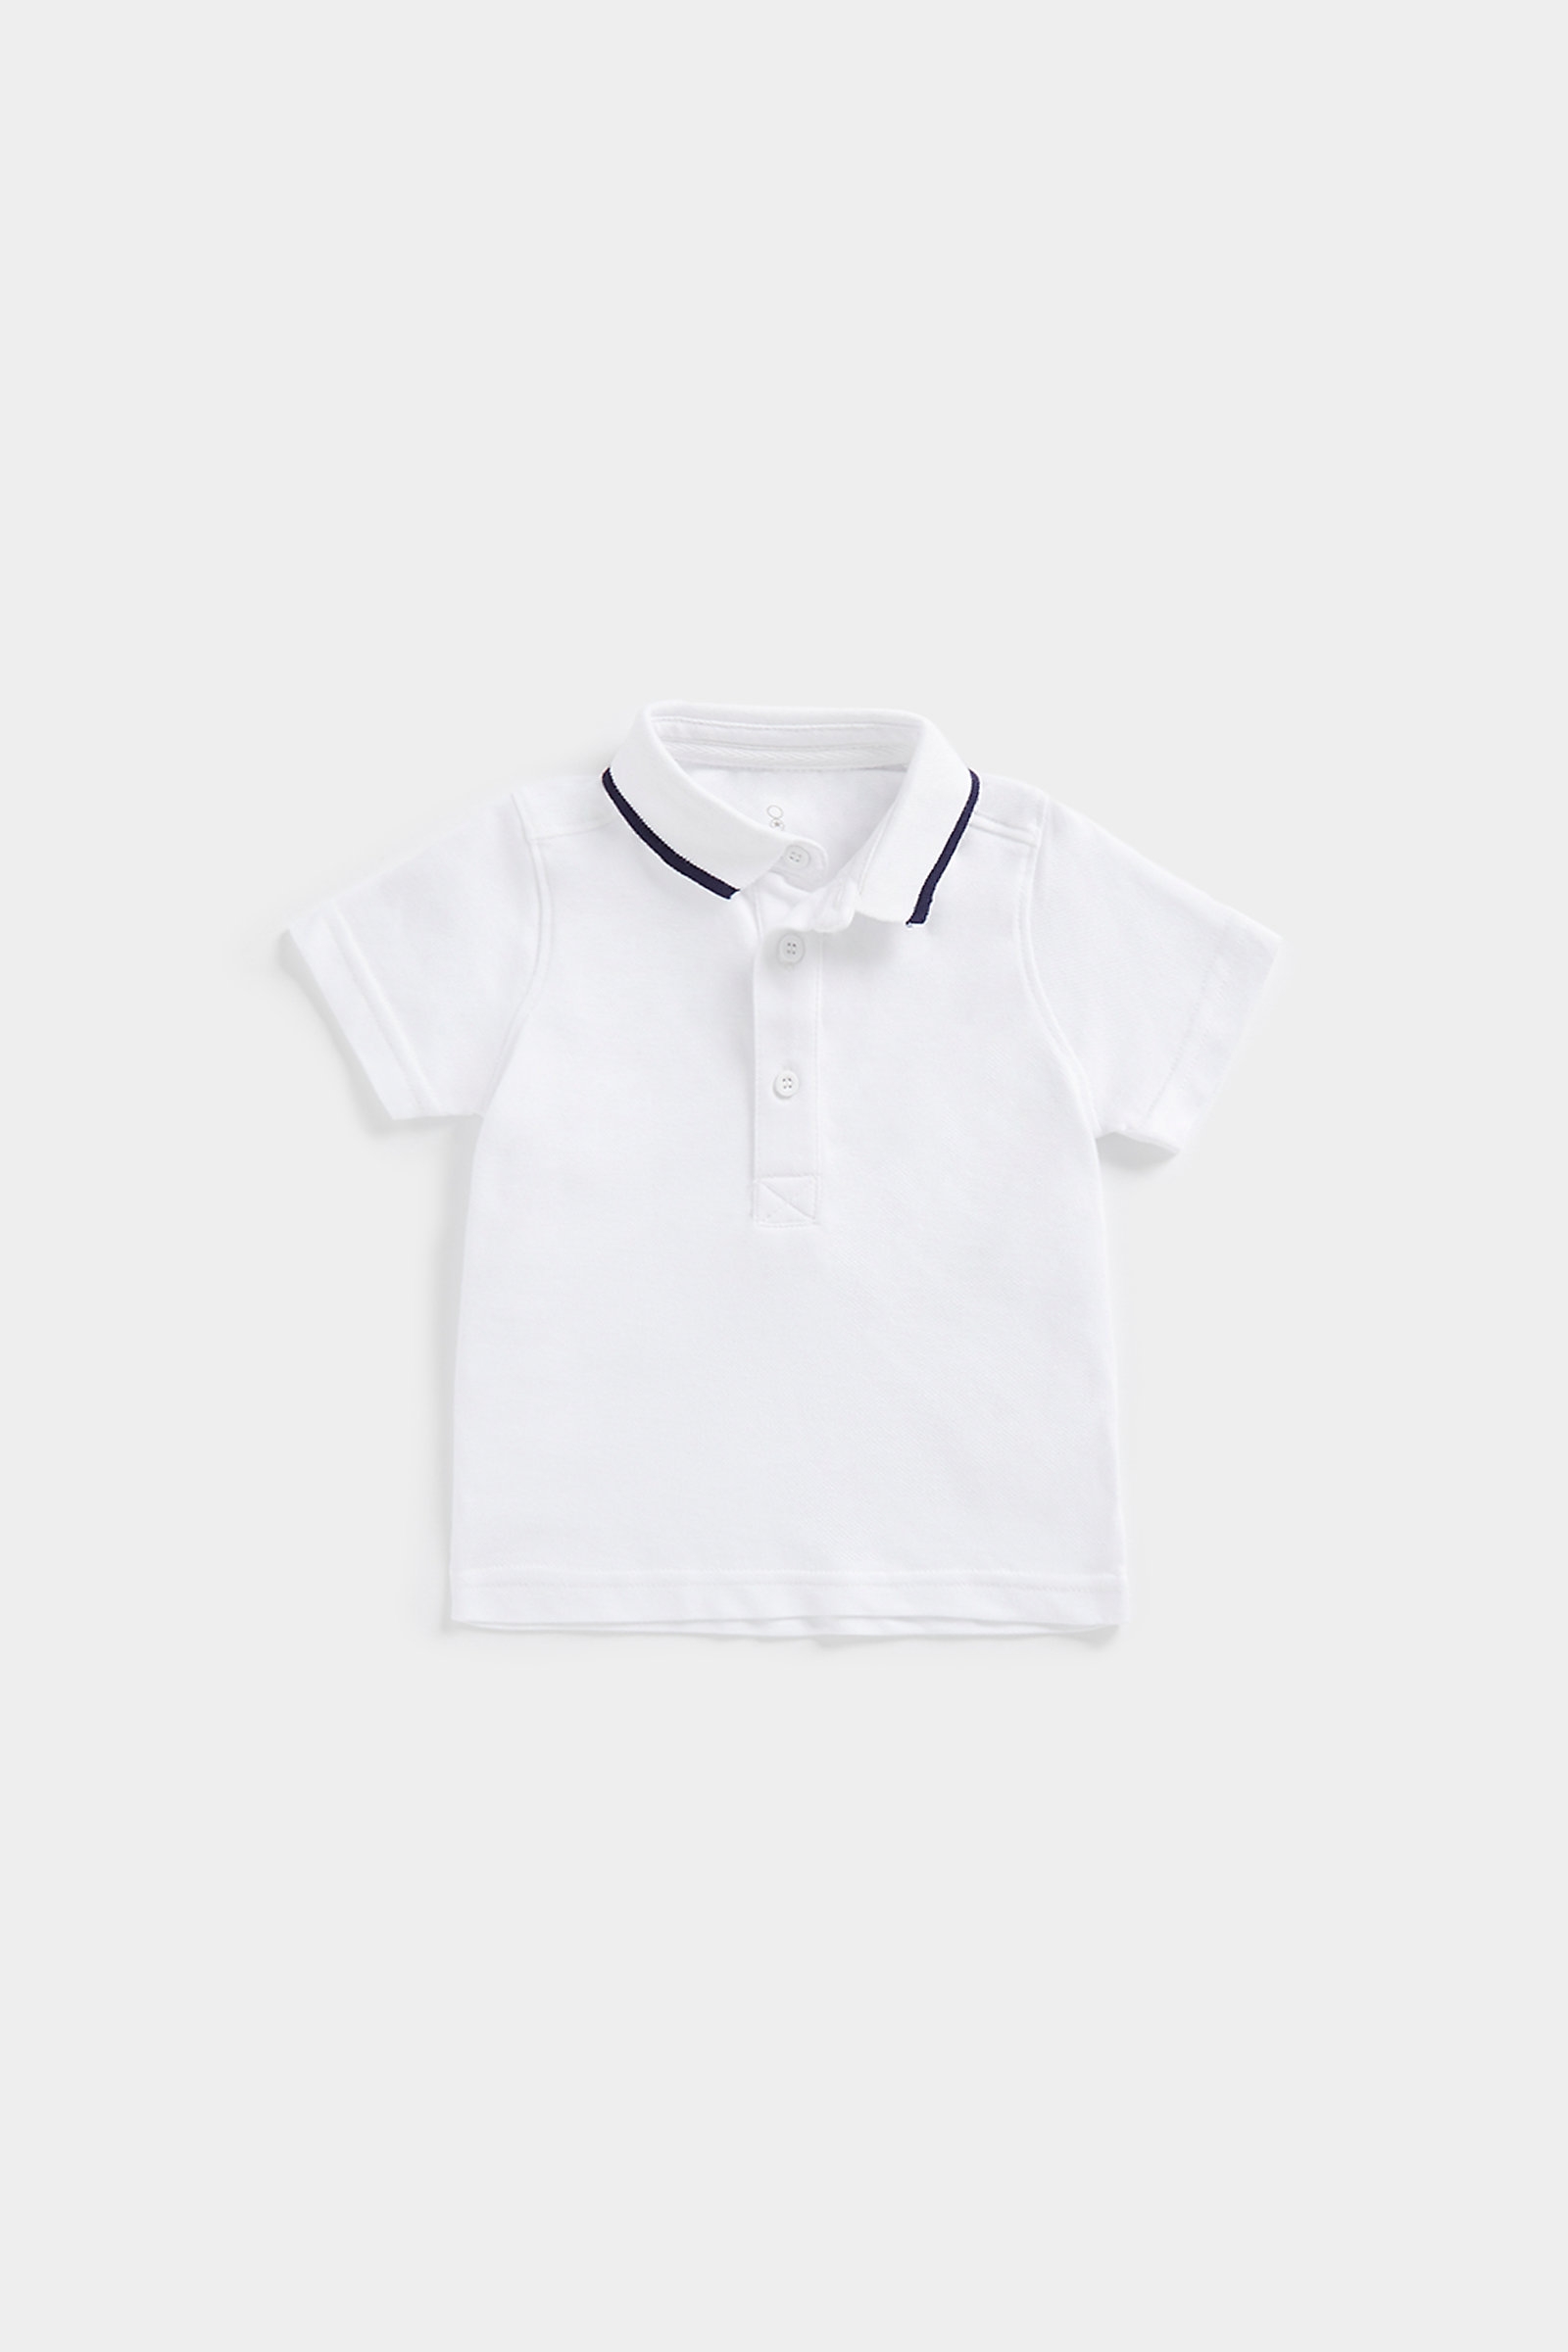 Boys Short Sleeves Polo White Polo Shirt -White